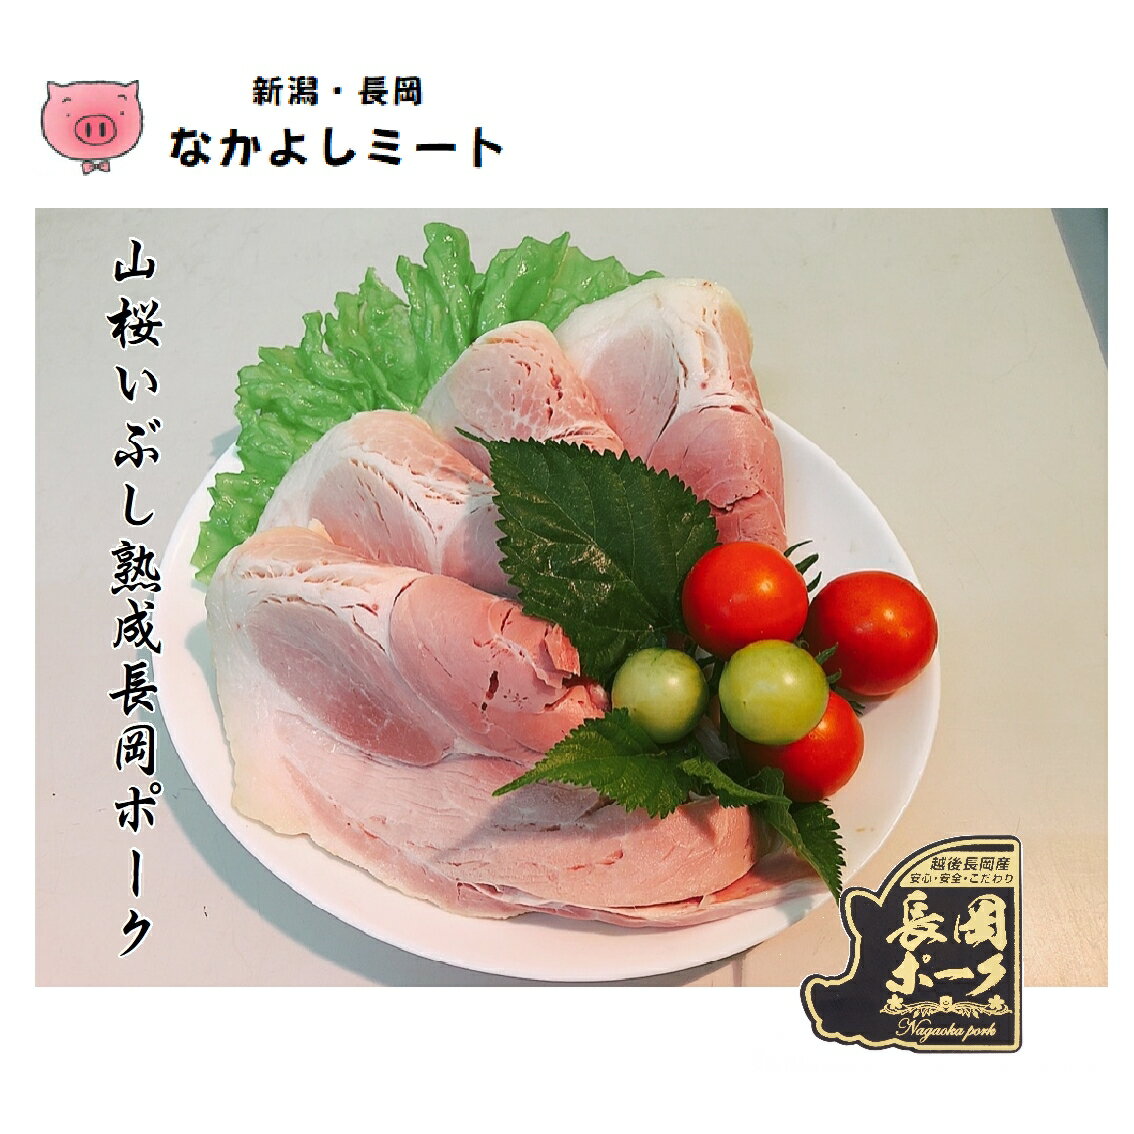 こだわりの味 なかよしミート 厳選された新潟県長岡産ブランド豚のモモ肉をひとつひとつ職人の手で仕上げた逸品 トップ 物産展でも大好評の味です 山桜の原木 でじっくり時間をかけて熟成し燻した